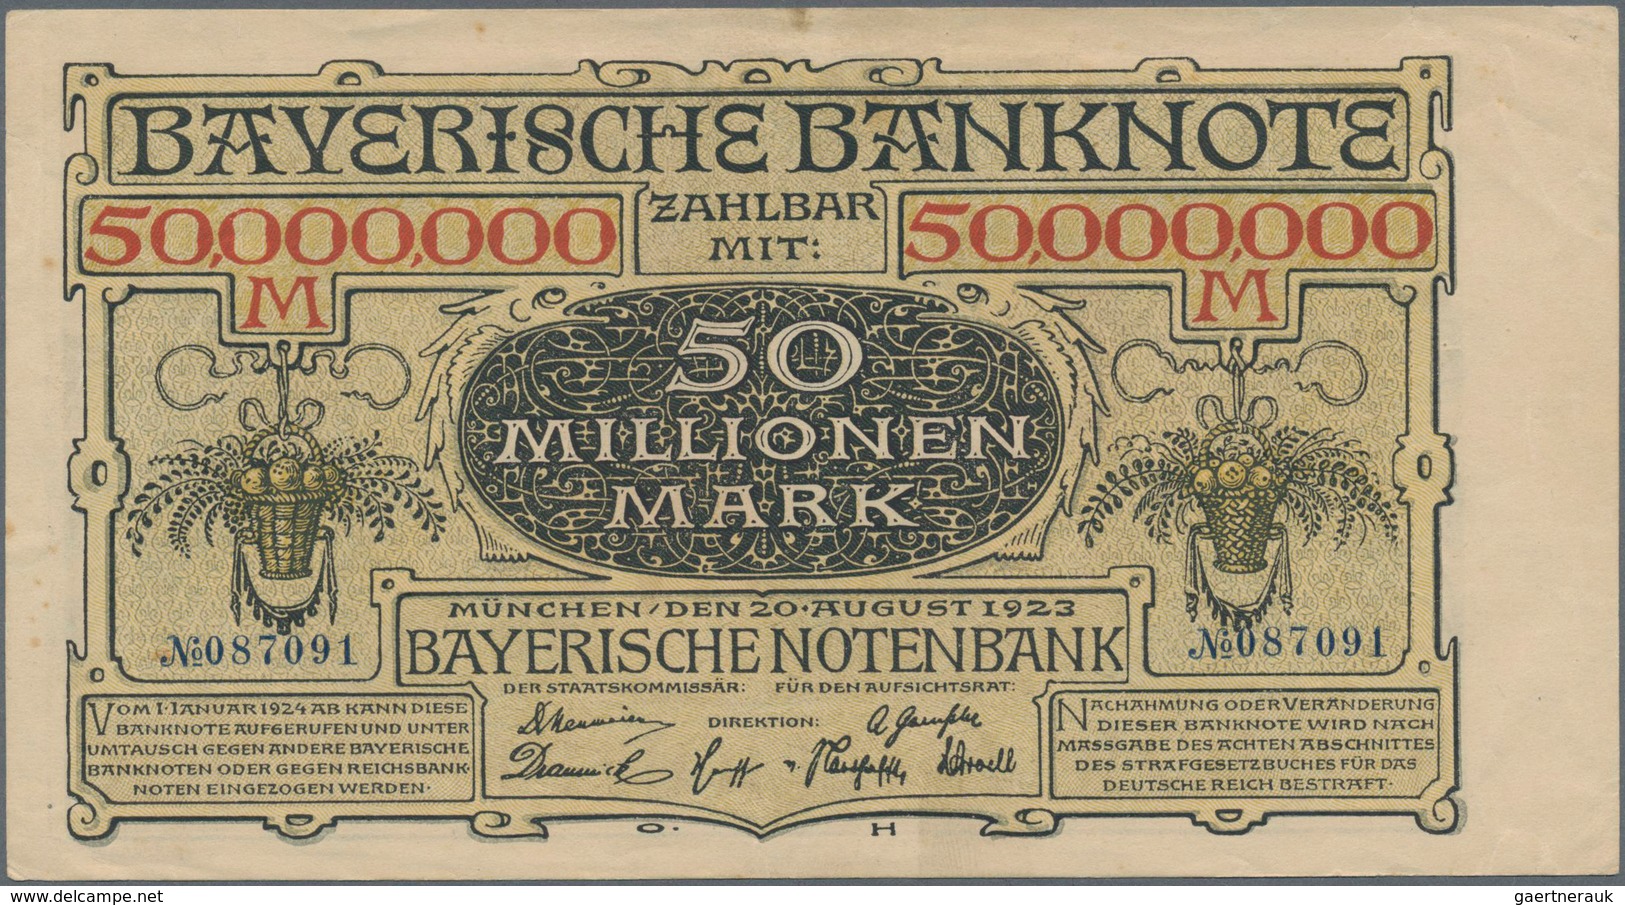 Deutschland - Länderscheine: Zwei Sammelalben mit zusammen 73 Banknoten der Länderbanken, dabei unte